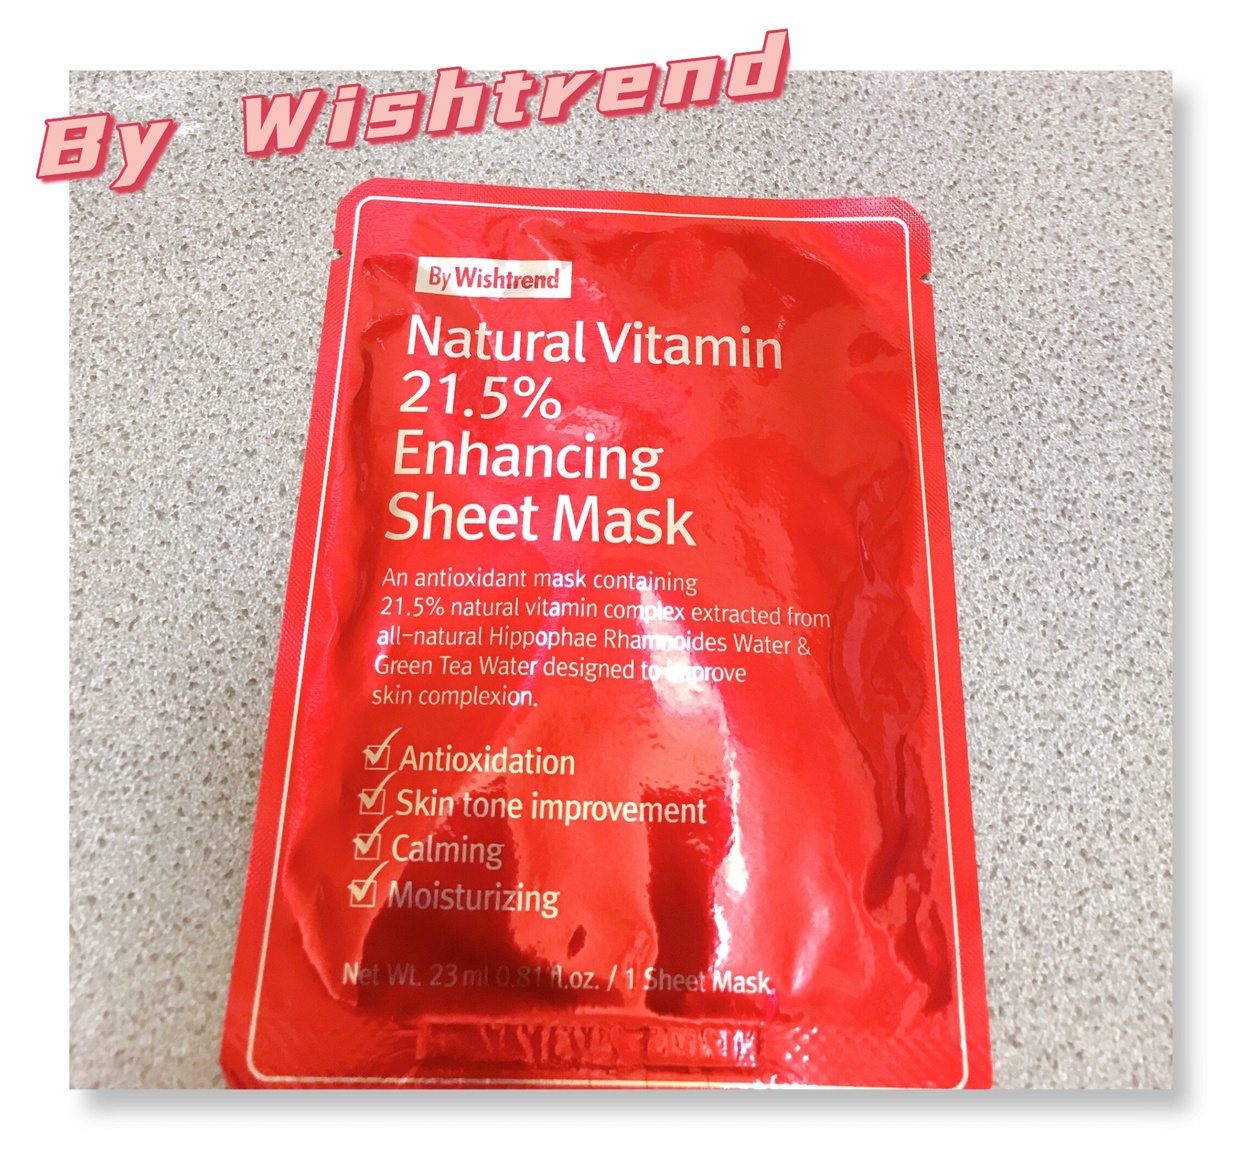 By Wishtrend(バイウィッシュトレンド) ナチュラルビタミン21.5インハンシーングシートマスクの良い点・メリットに関するMarukoさんの口コミ画像1